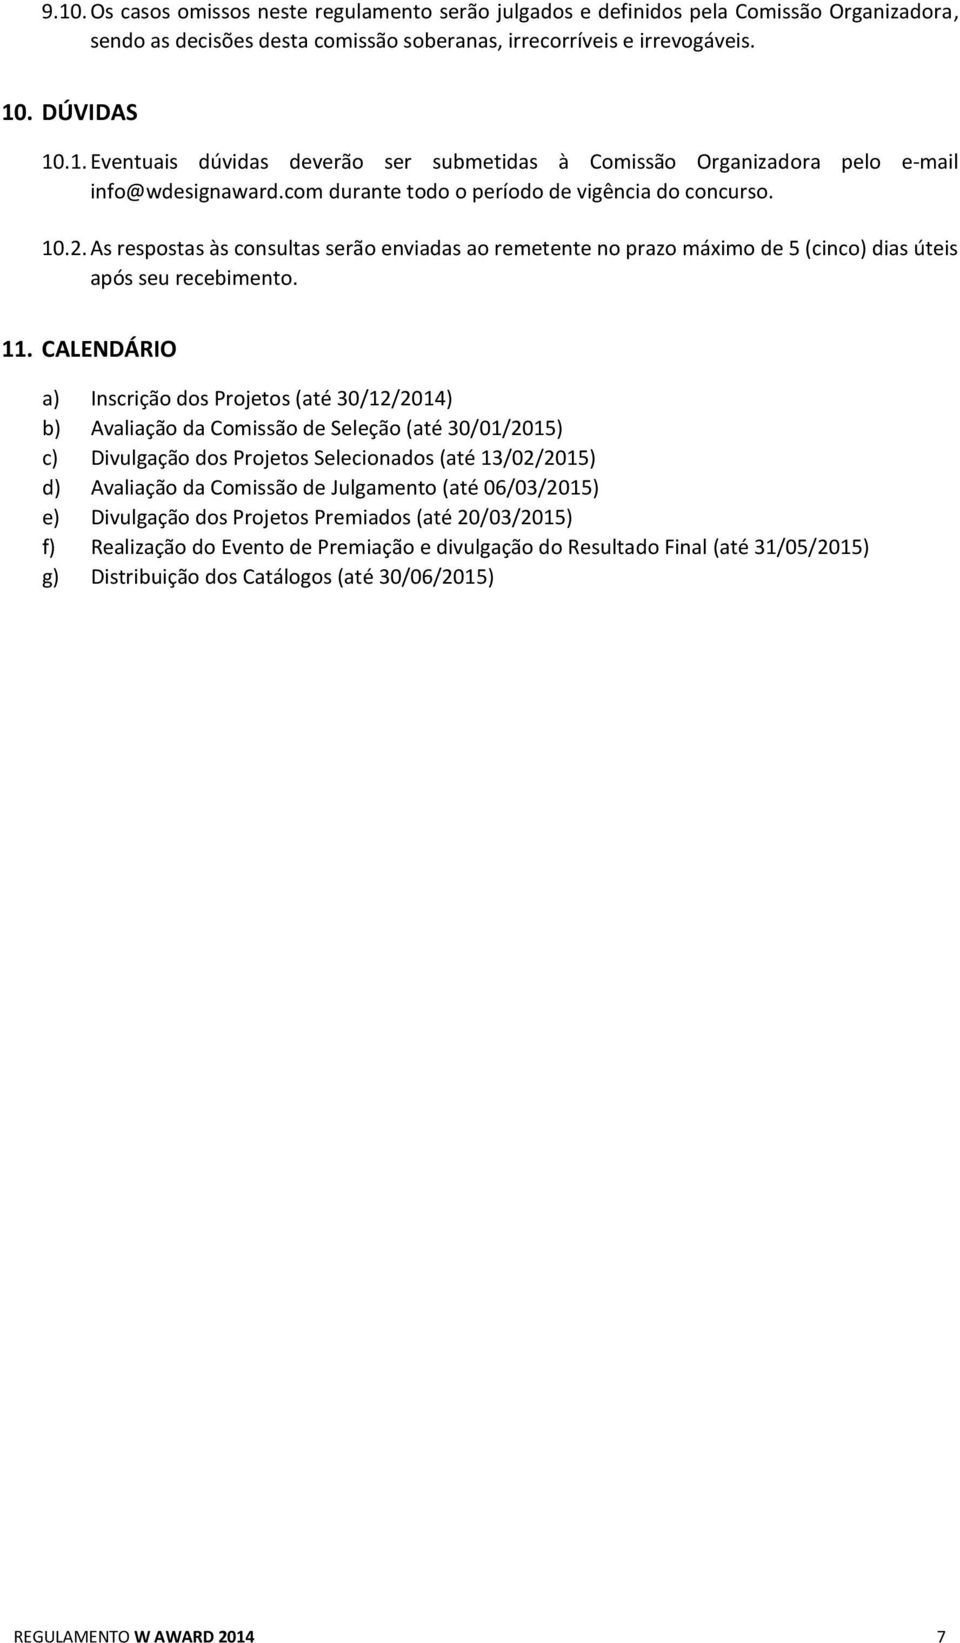 CALENDÁRIO a) Inscrição dos Projetos (até 30/12/2014) b) Avaliação da Comissão de Seleção (até 30/01/2015) c) Divulgação dos Projetos Selecionados (até 13/02/2015) d) Avaliação da Comissão de